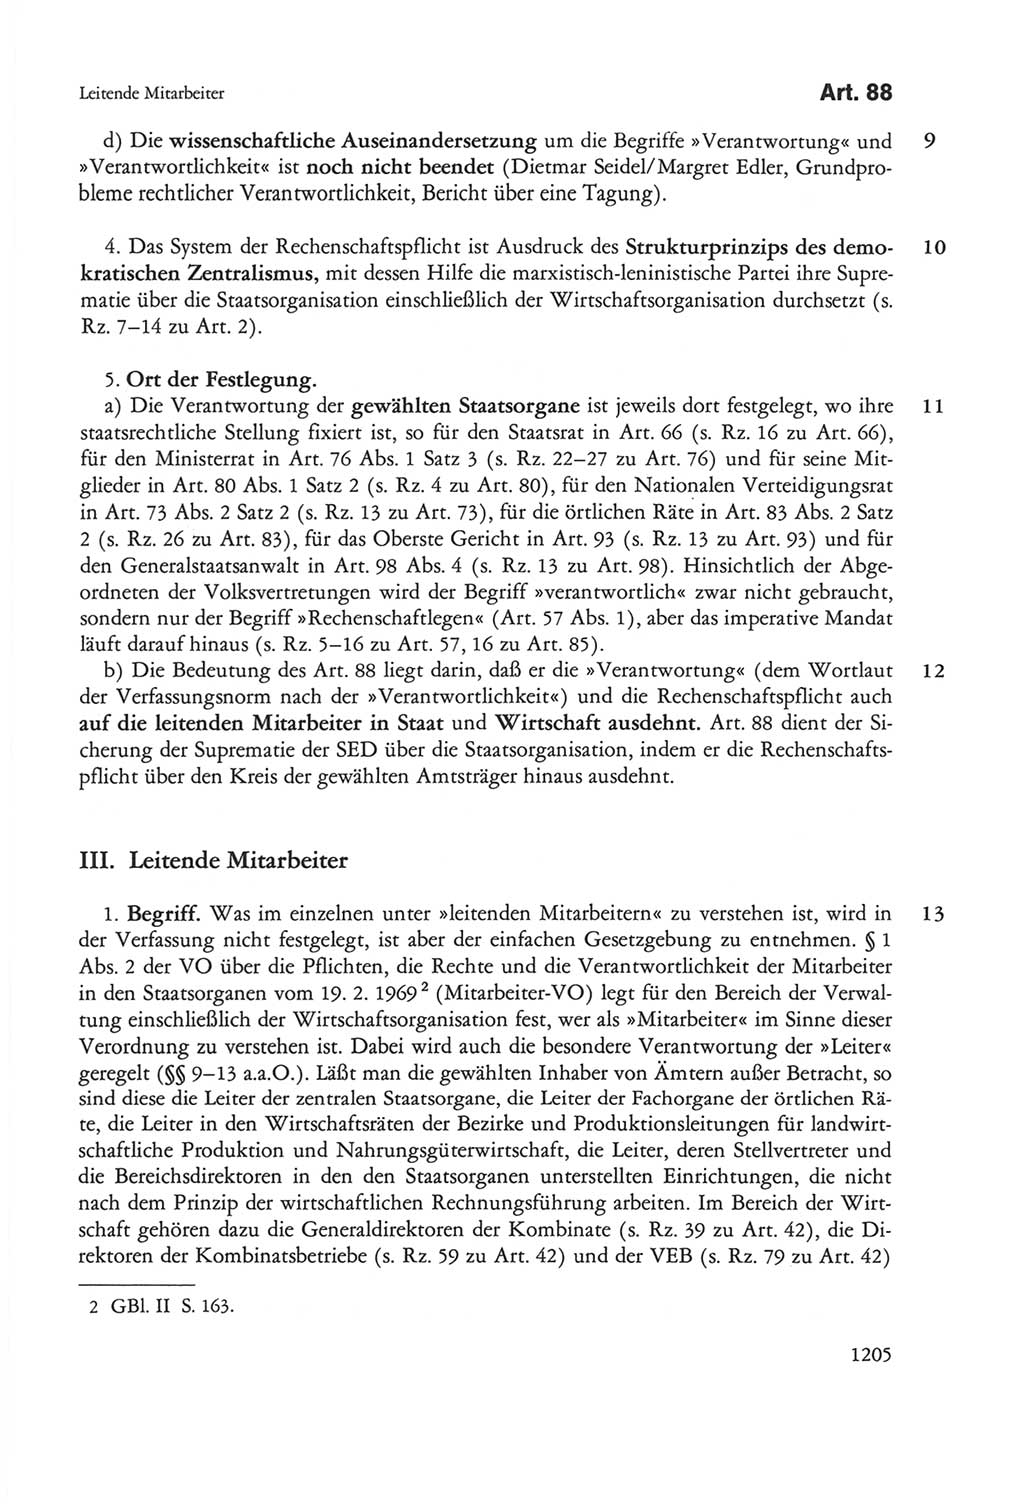 Die sozialistische Verfassung der Deutschen Demokratischen Republik (DDR), Kommentar 1982, Seite 1205 (Soz. Verf. DDR Komm. 1982, S. 1205)